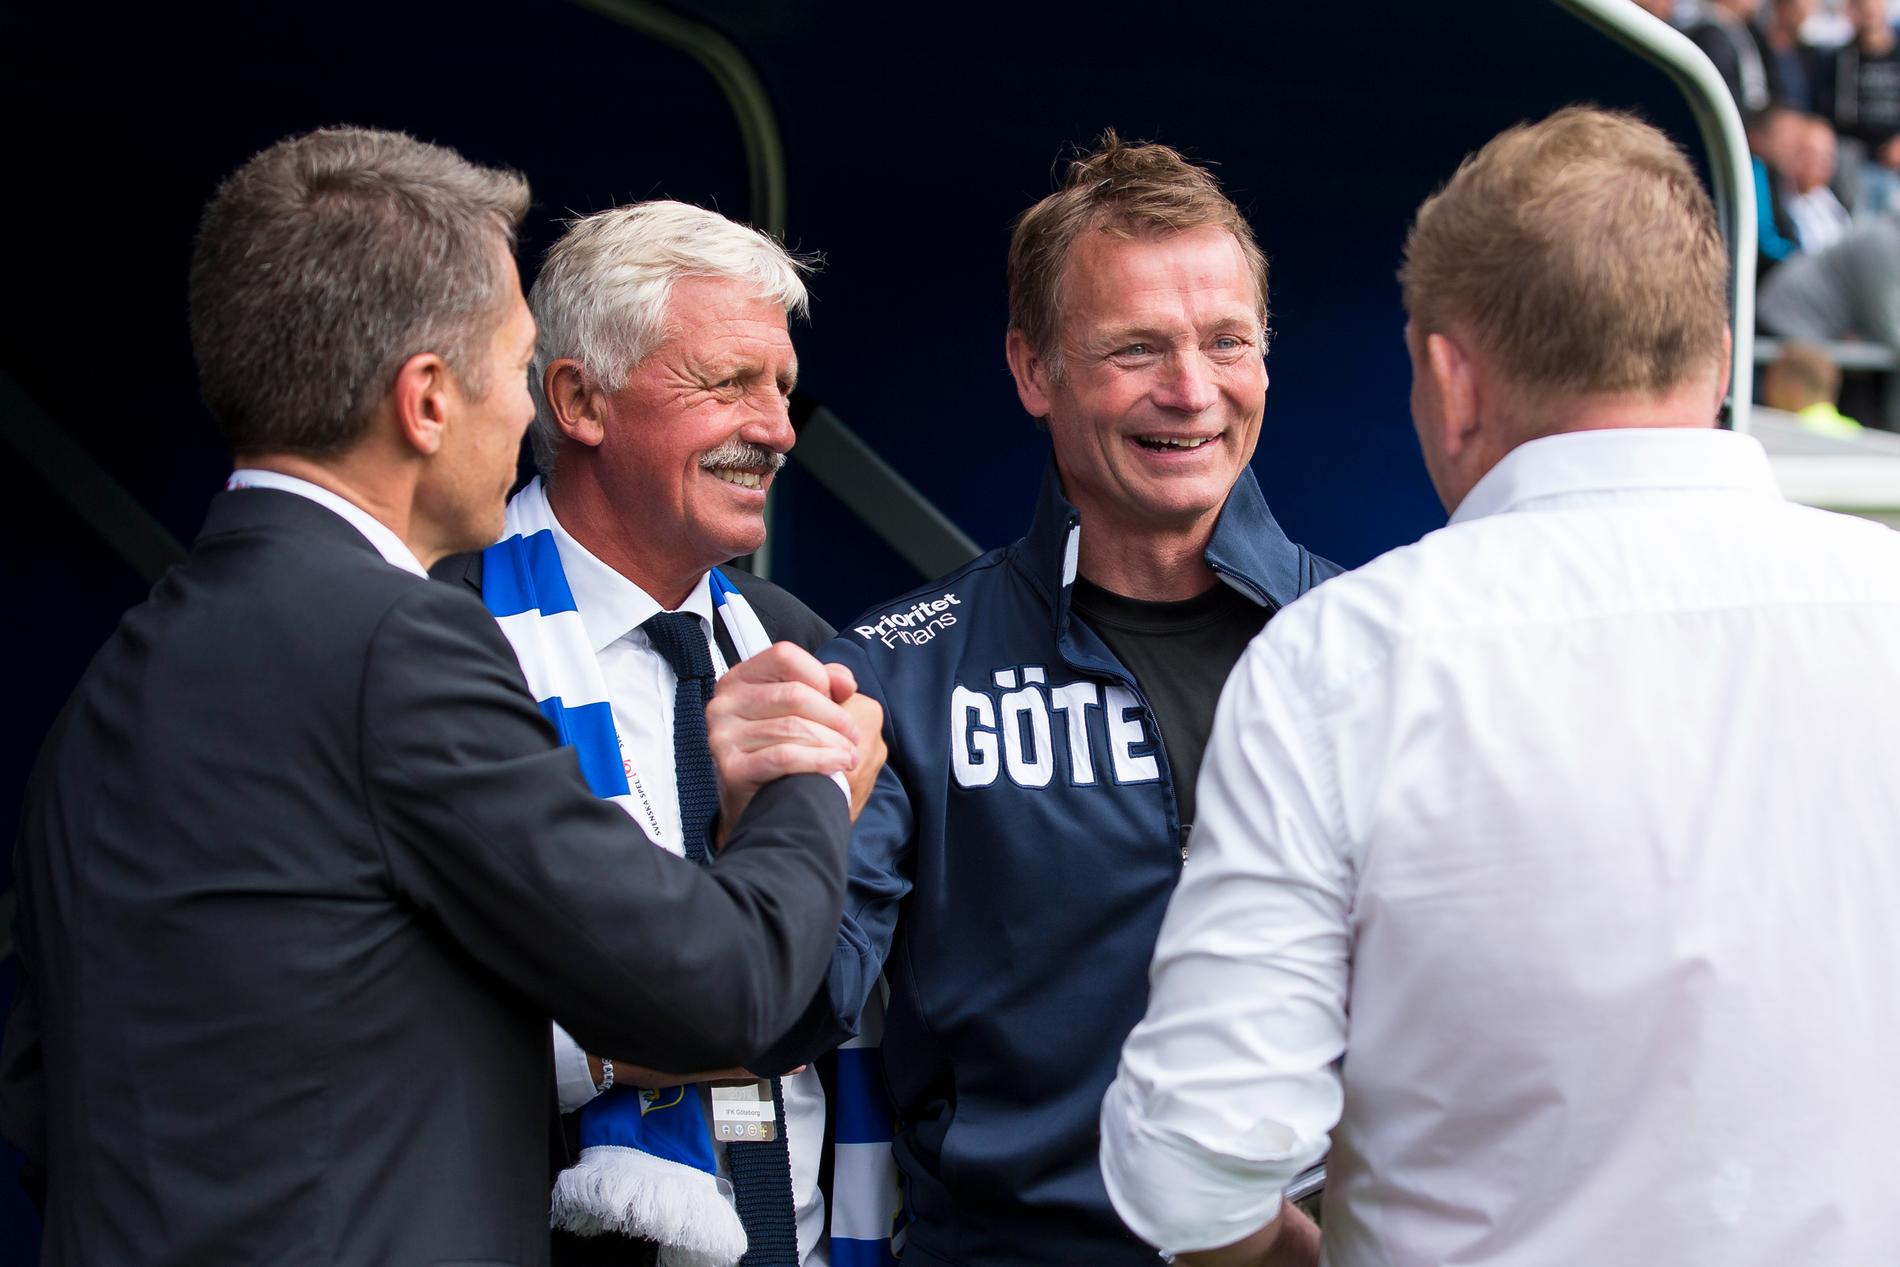 Det var glada miner på Mats Gren, Frank Andersson, Torbjörn Nilsson och Alf Westerberg efter segern.